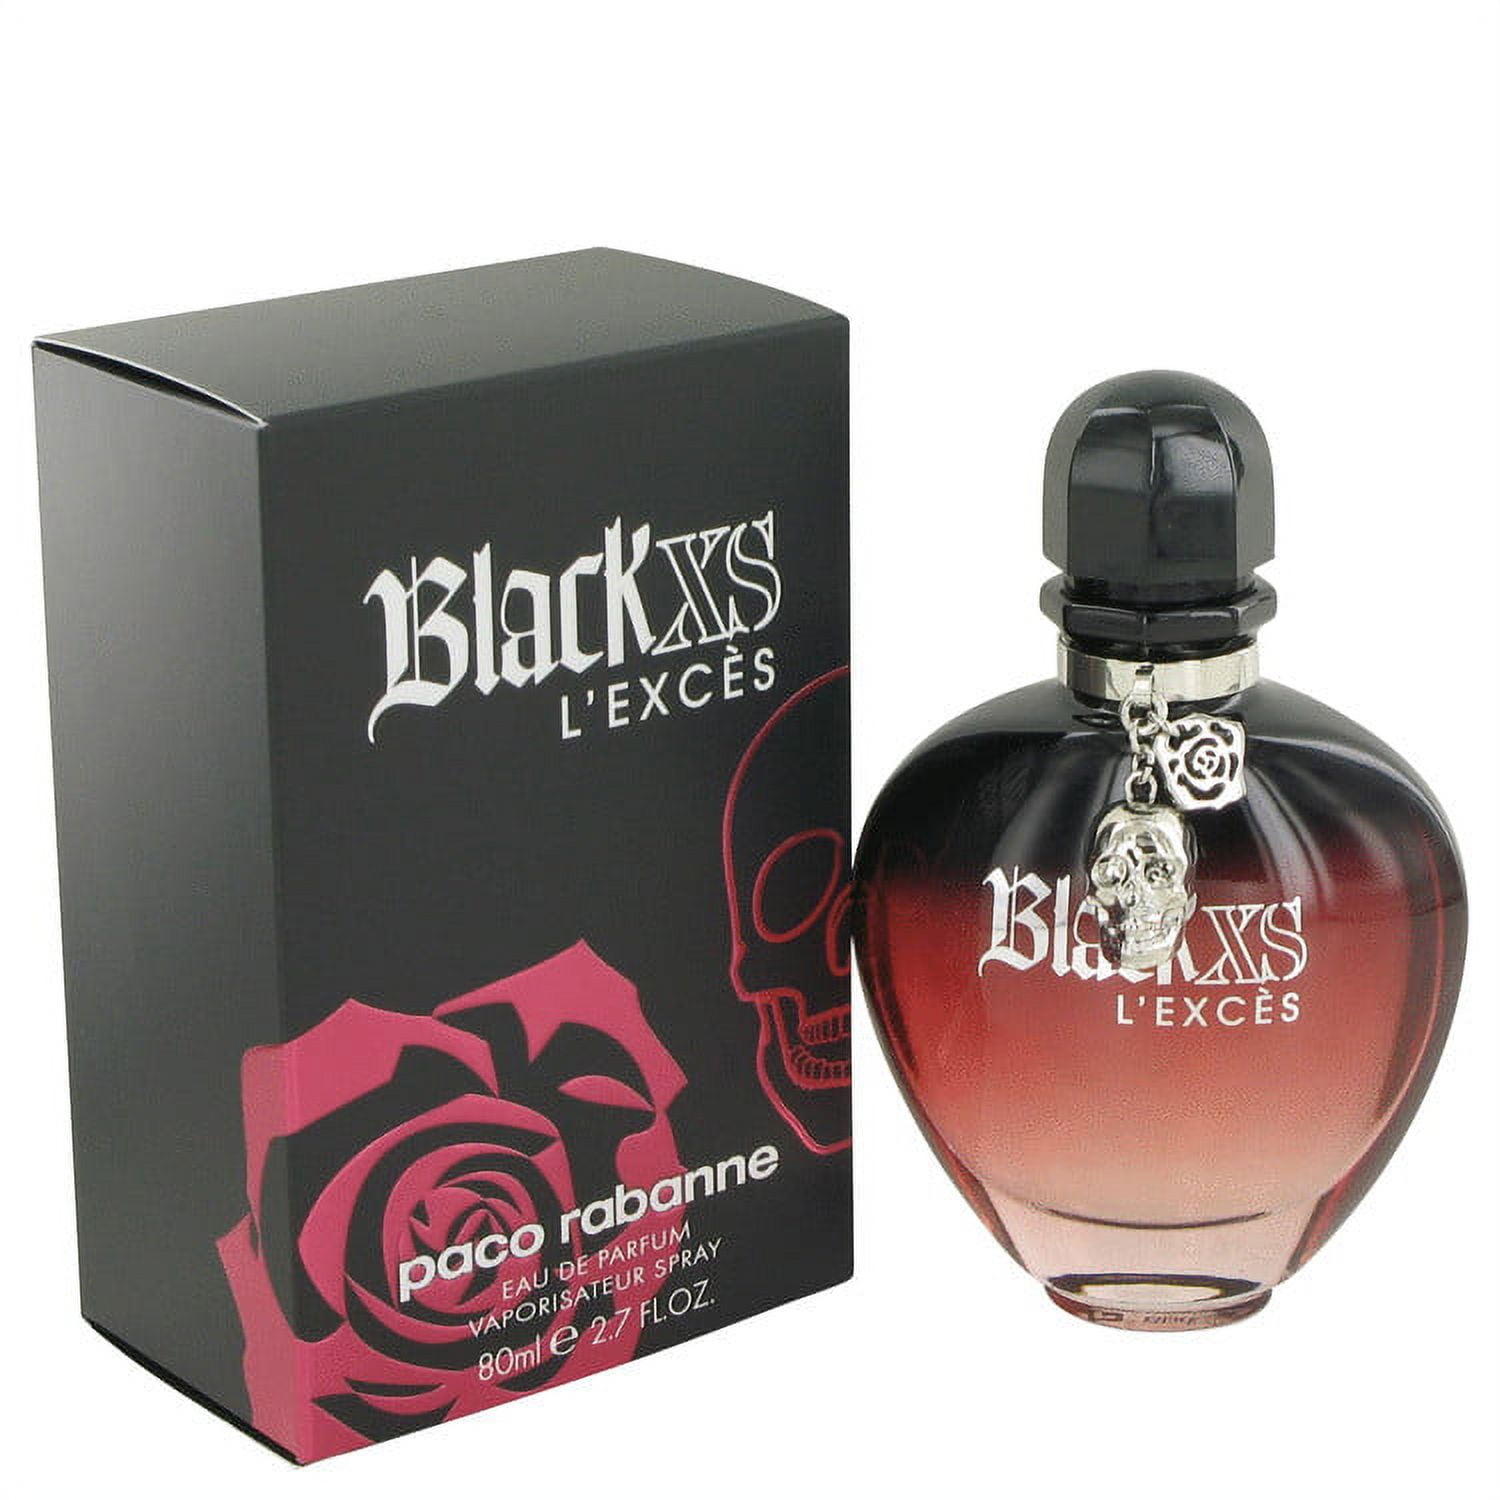 Black XS L'exces Eau De Parfum Spray 2.7 oz For Women 100% authentic ...